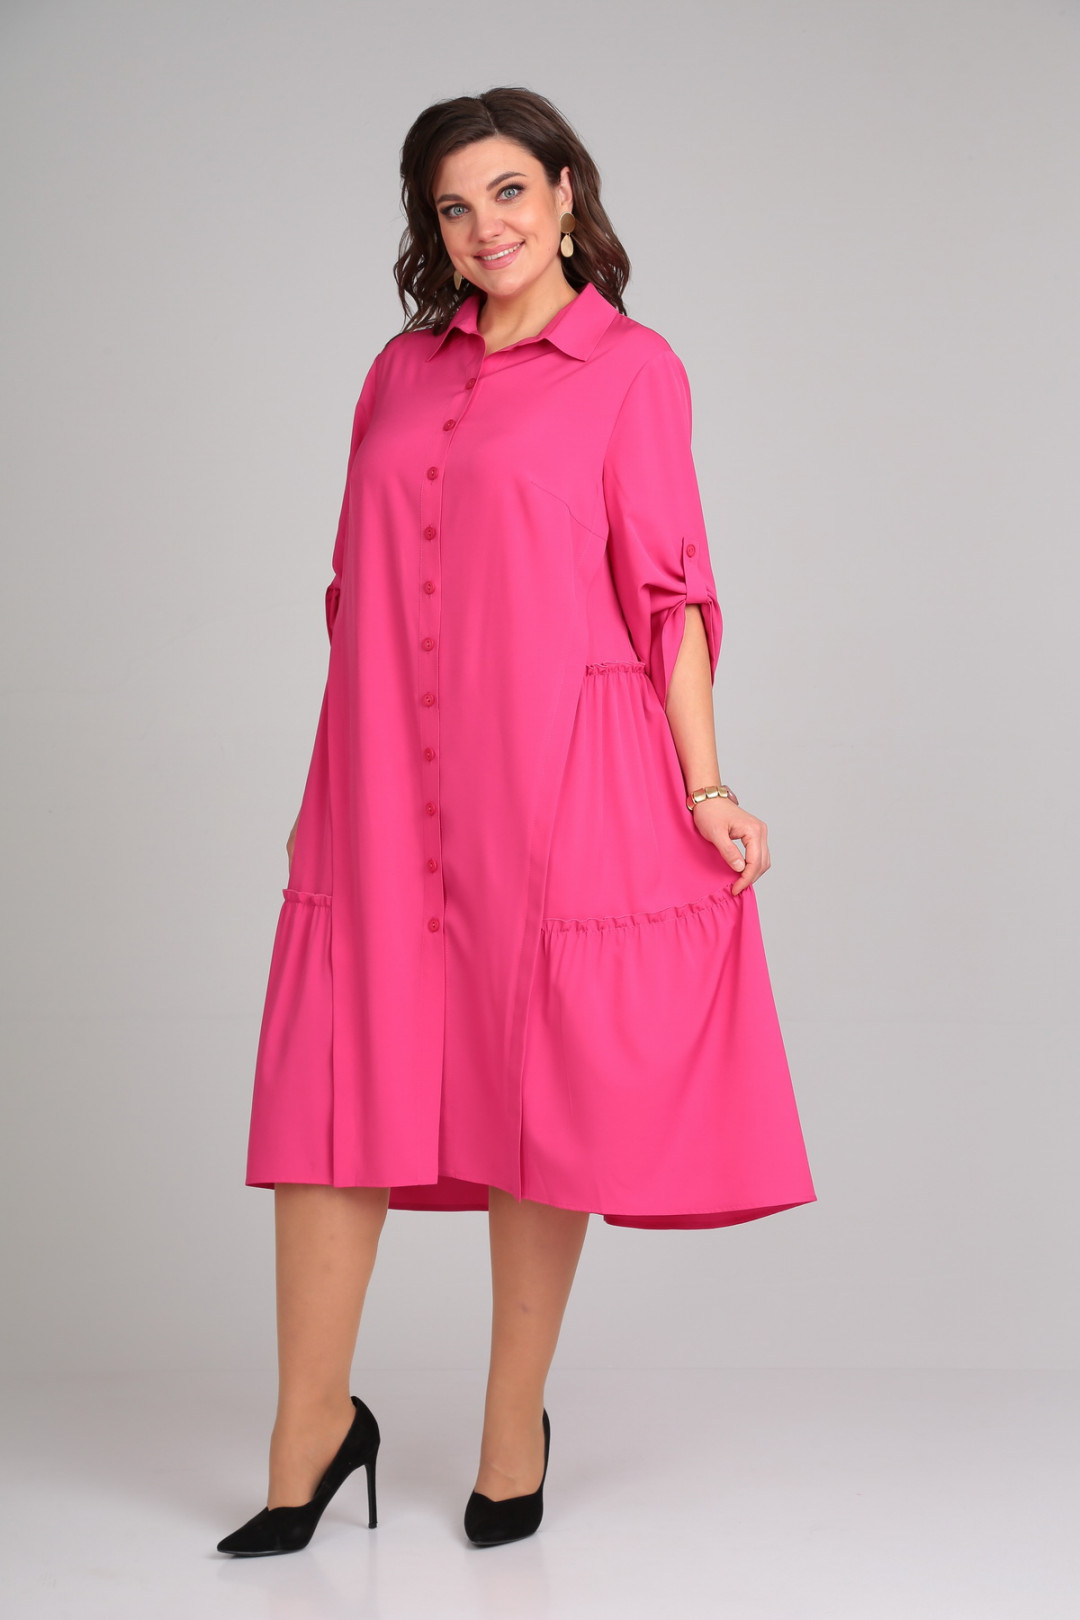 Платье Мублиз 030 розовый(ягодный)